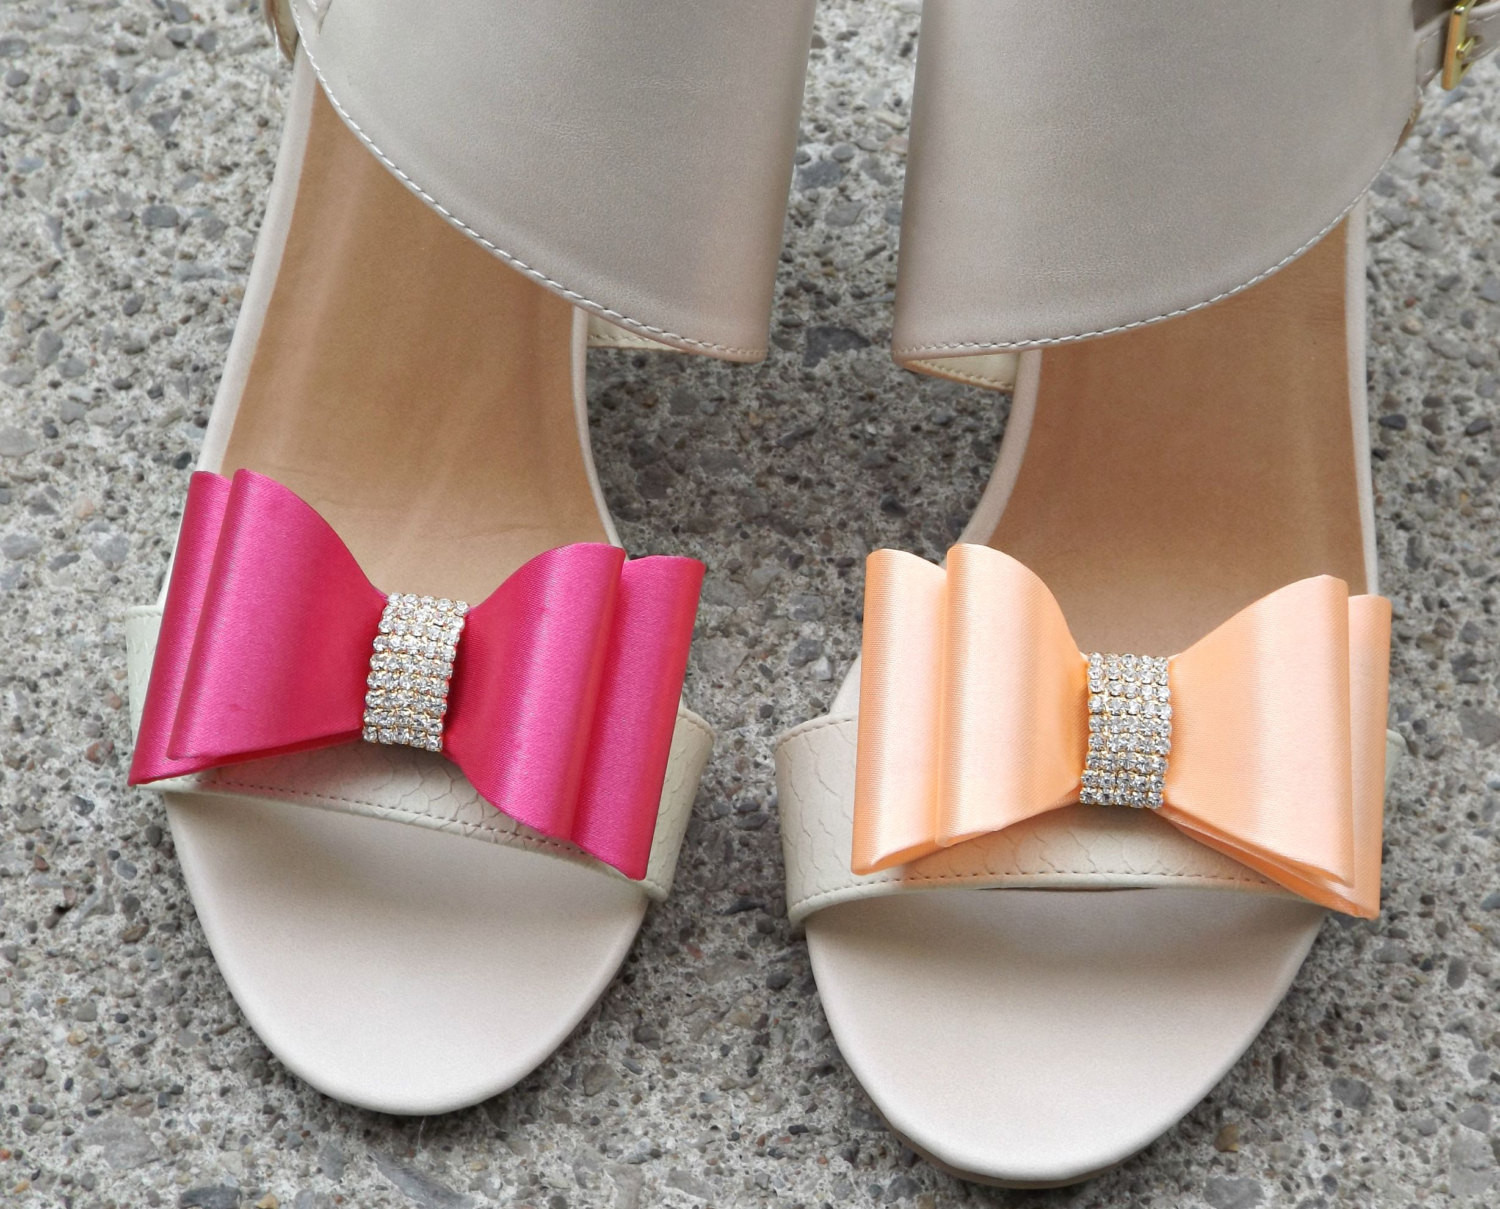 Fuschia Shoes For Wedding
 FUSCHIA Bridal Wedding Shoe Clips Satin by